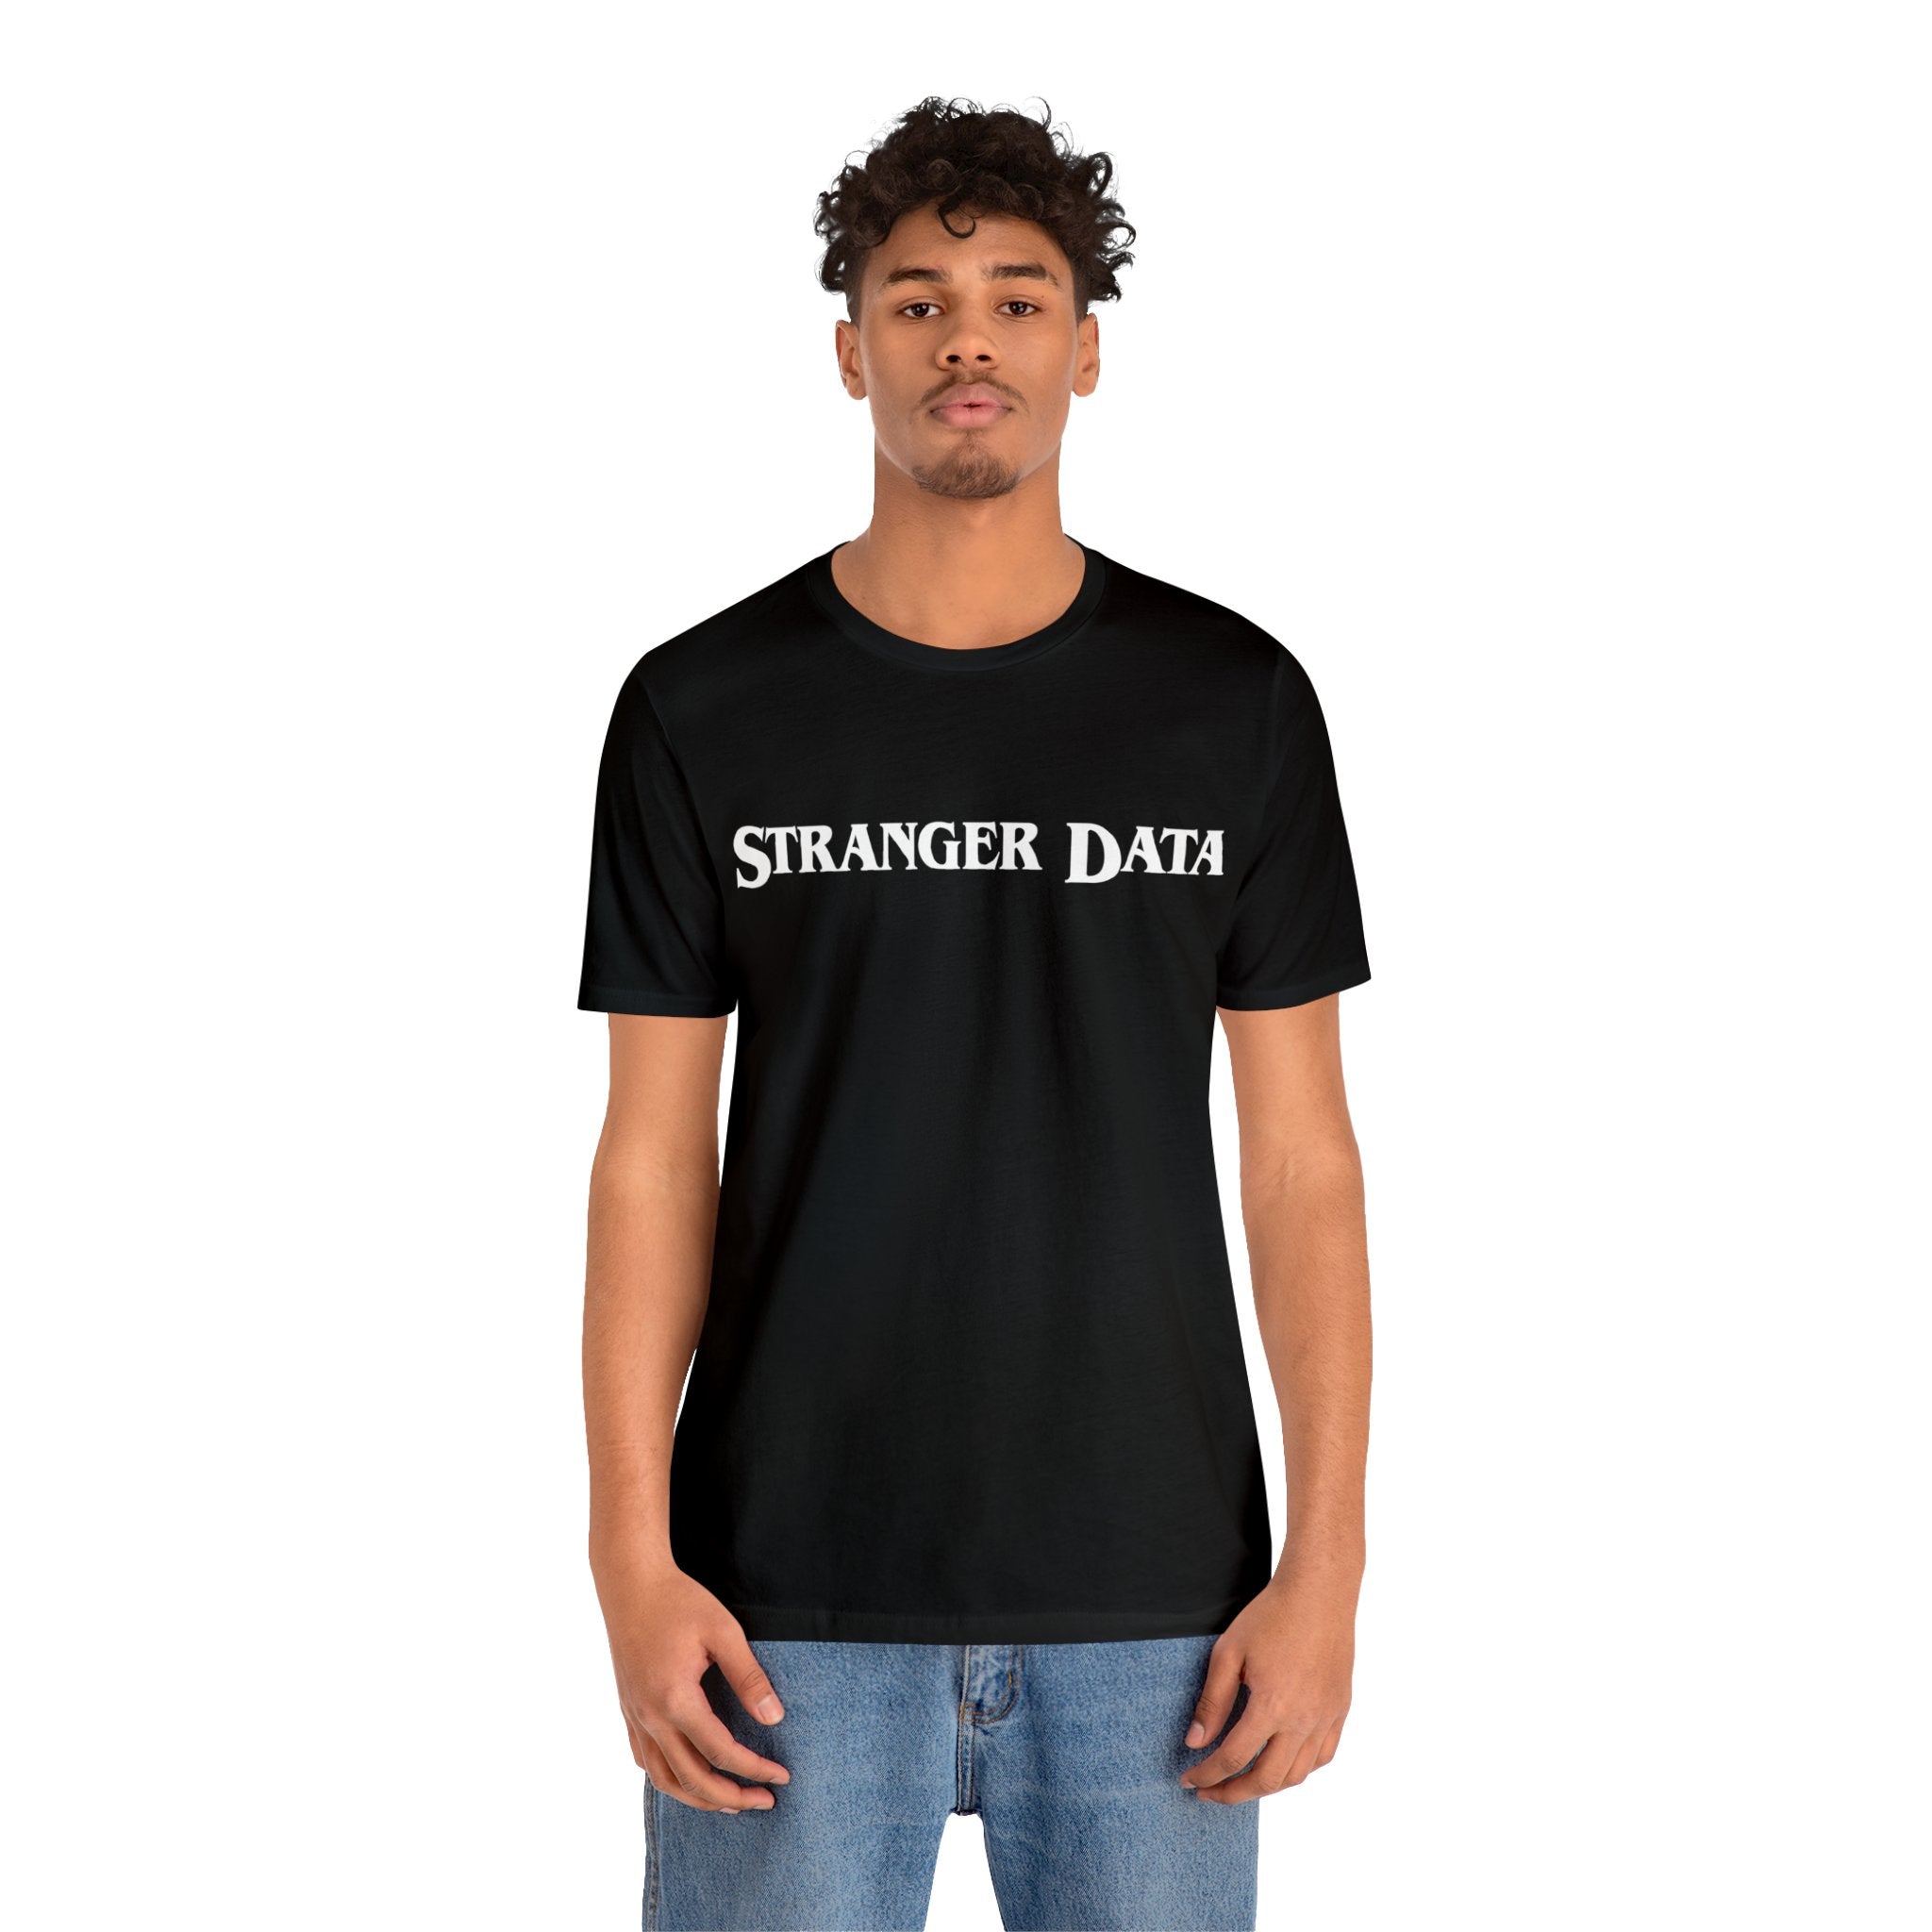 Stranger Data Tee Shirt